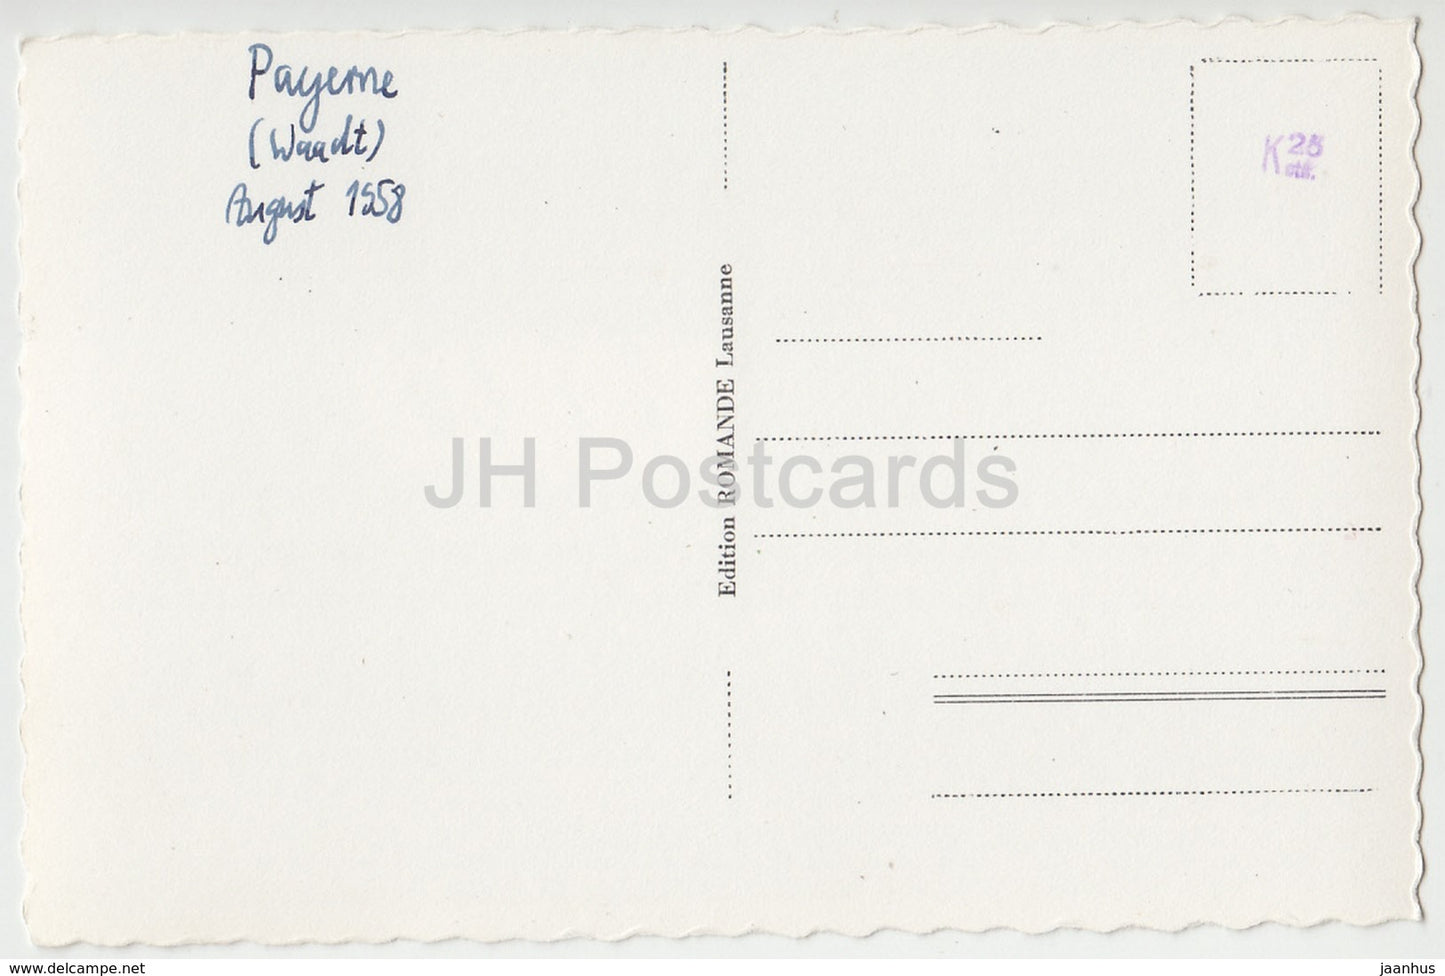 Payerne - Tombeau de la Reine Berthe - 1212 - Suisse - 1958 - cartes postales anciennes - occasion